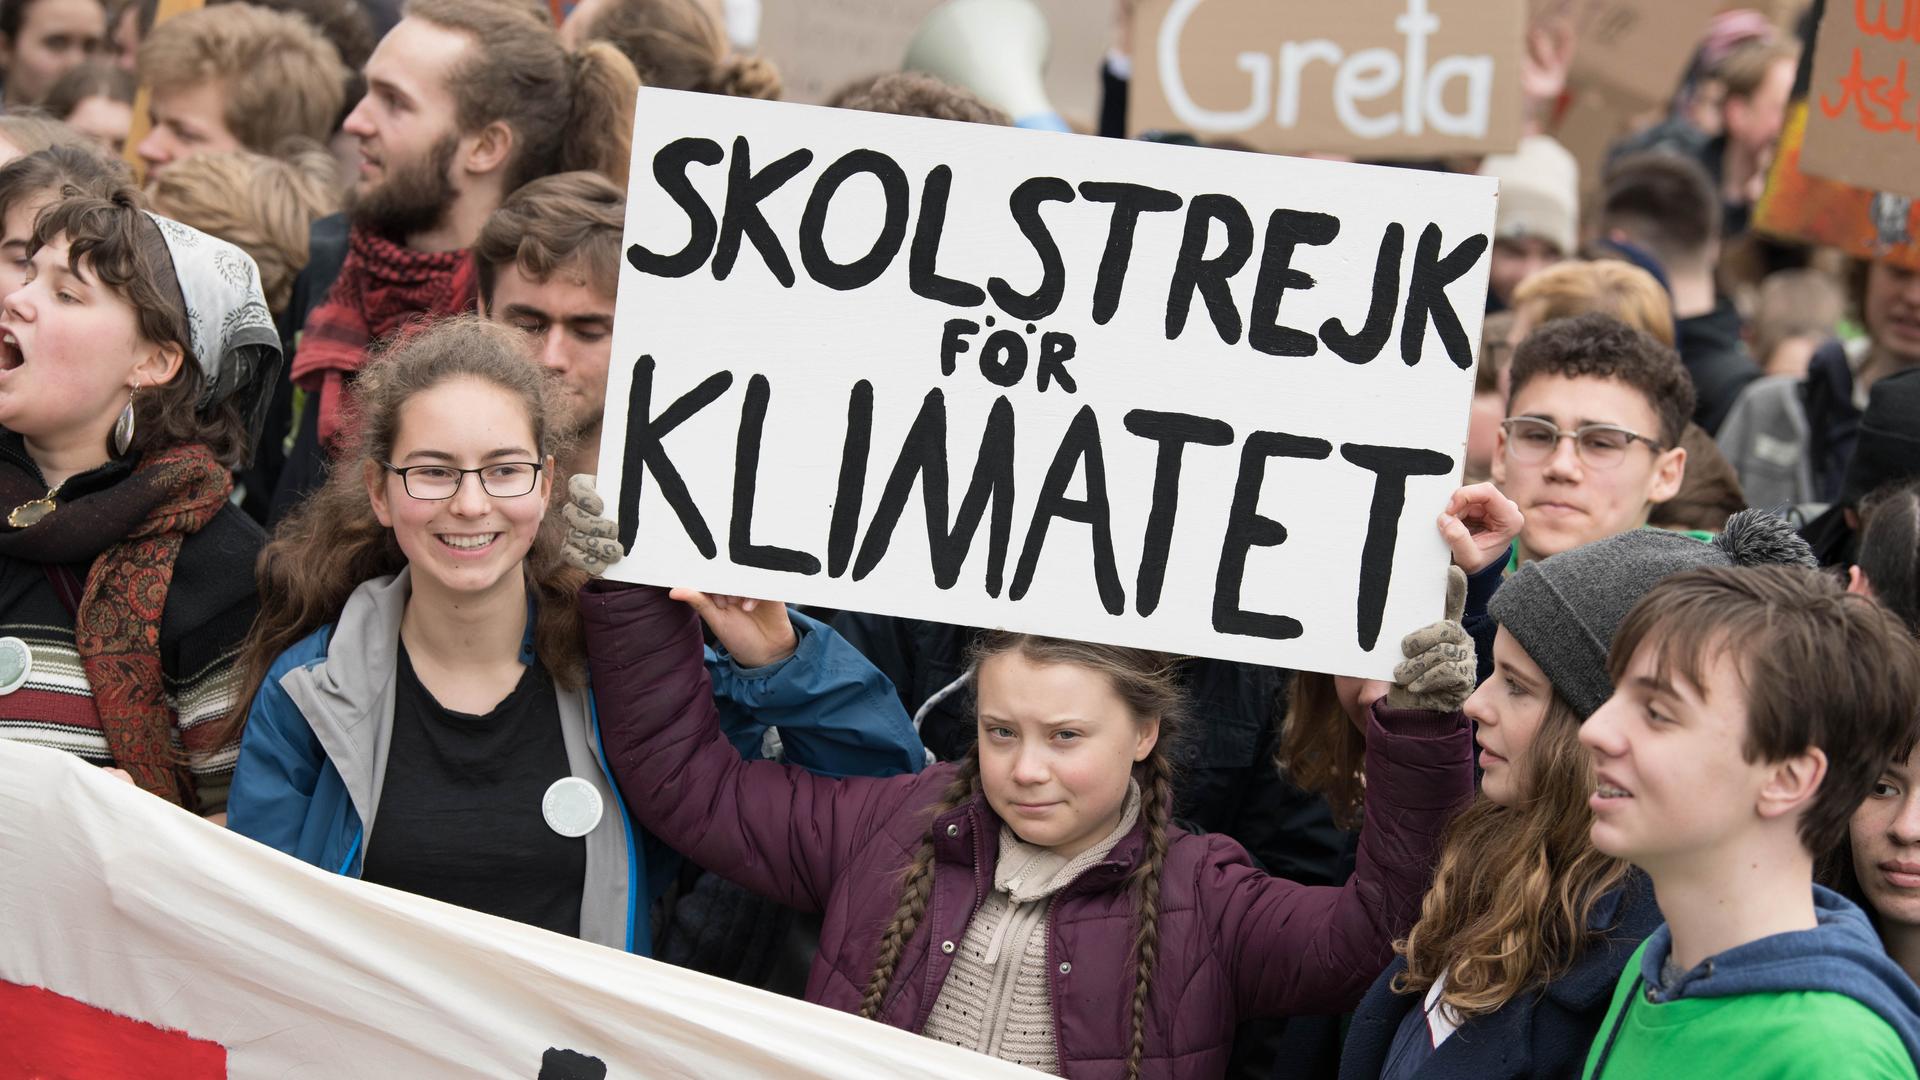 Mehrere junge Menschen stehen zusammen und halten Plakate hoch, sie demonstrieren für Klimaschutz.